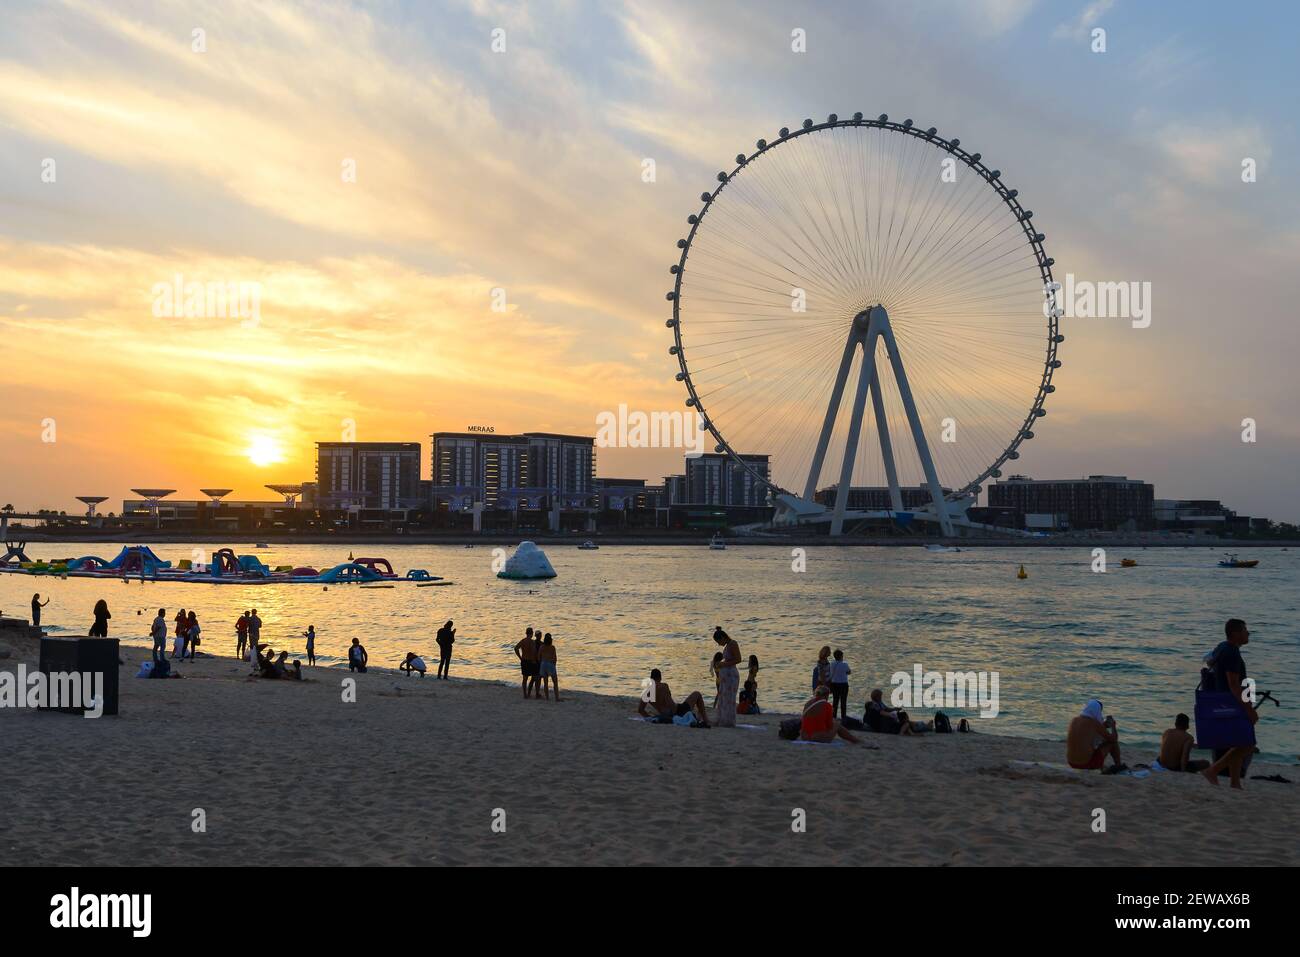 Touristen am JBR Marina Beach bei Sonnenuntergang und Ain Dubai Eye Riesenrad Silhouette. Vereinigte Arabische Emirate ist offen für Tourismus mit COVID Einschränkungen. Stockfoto